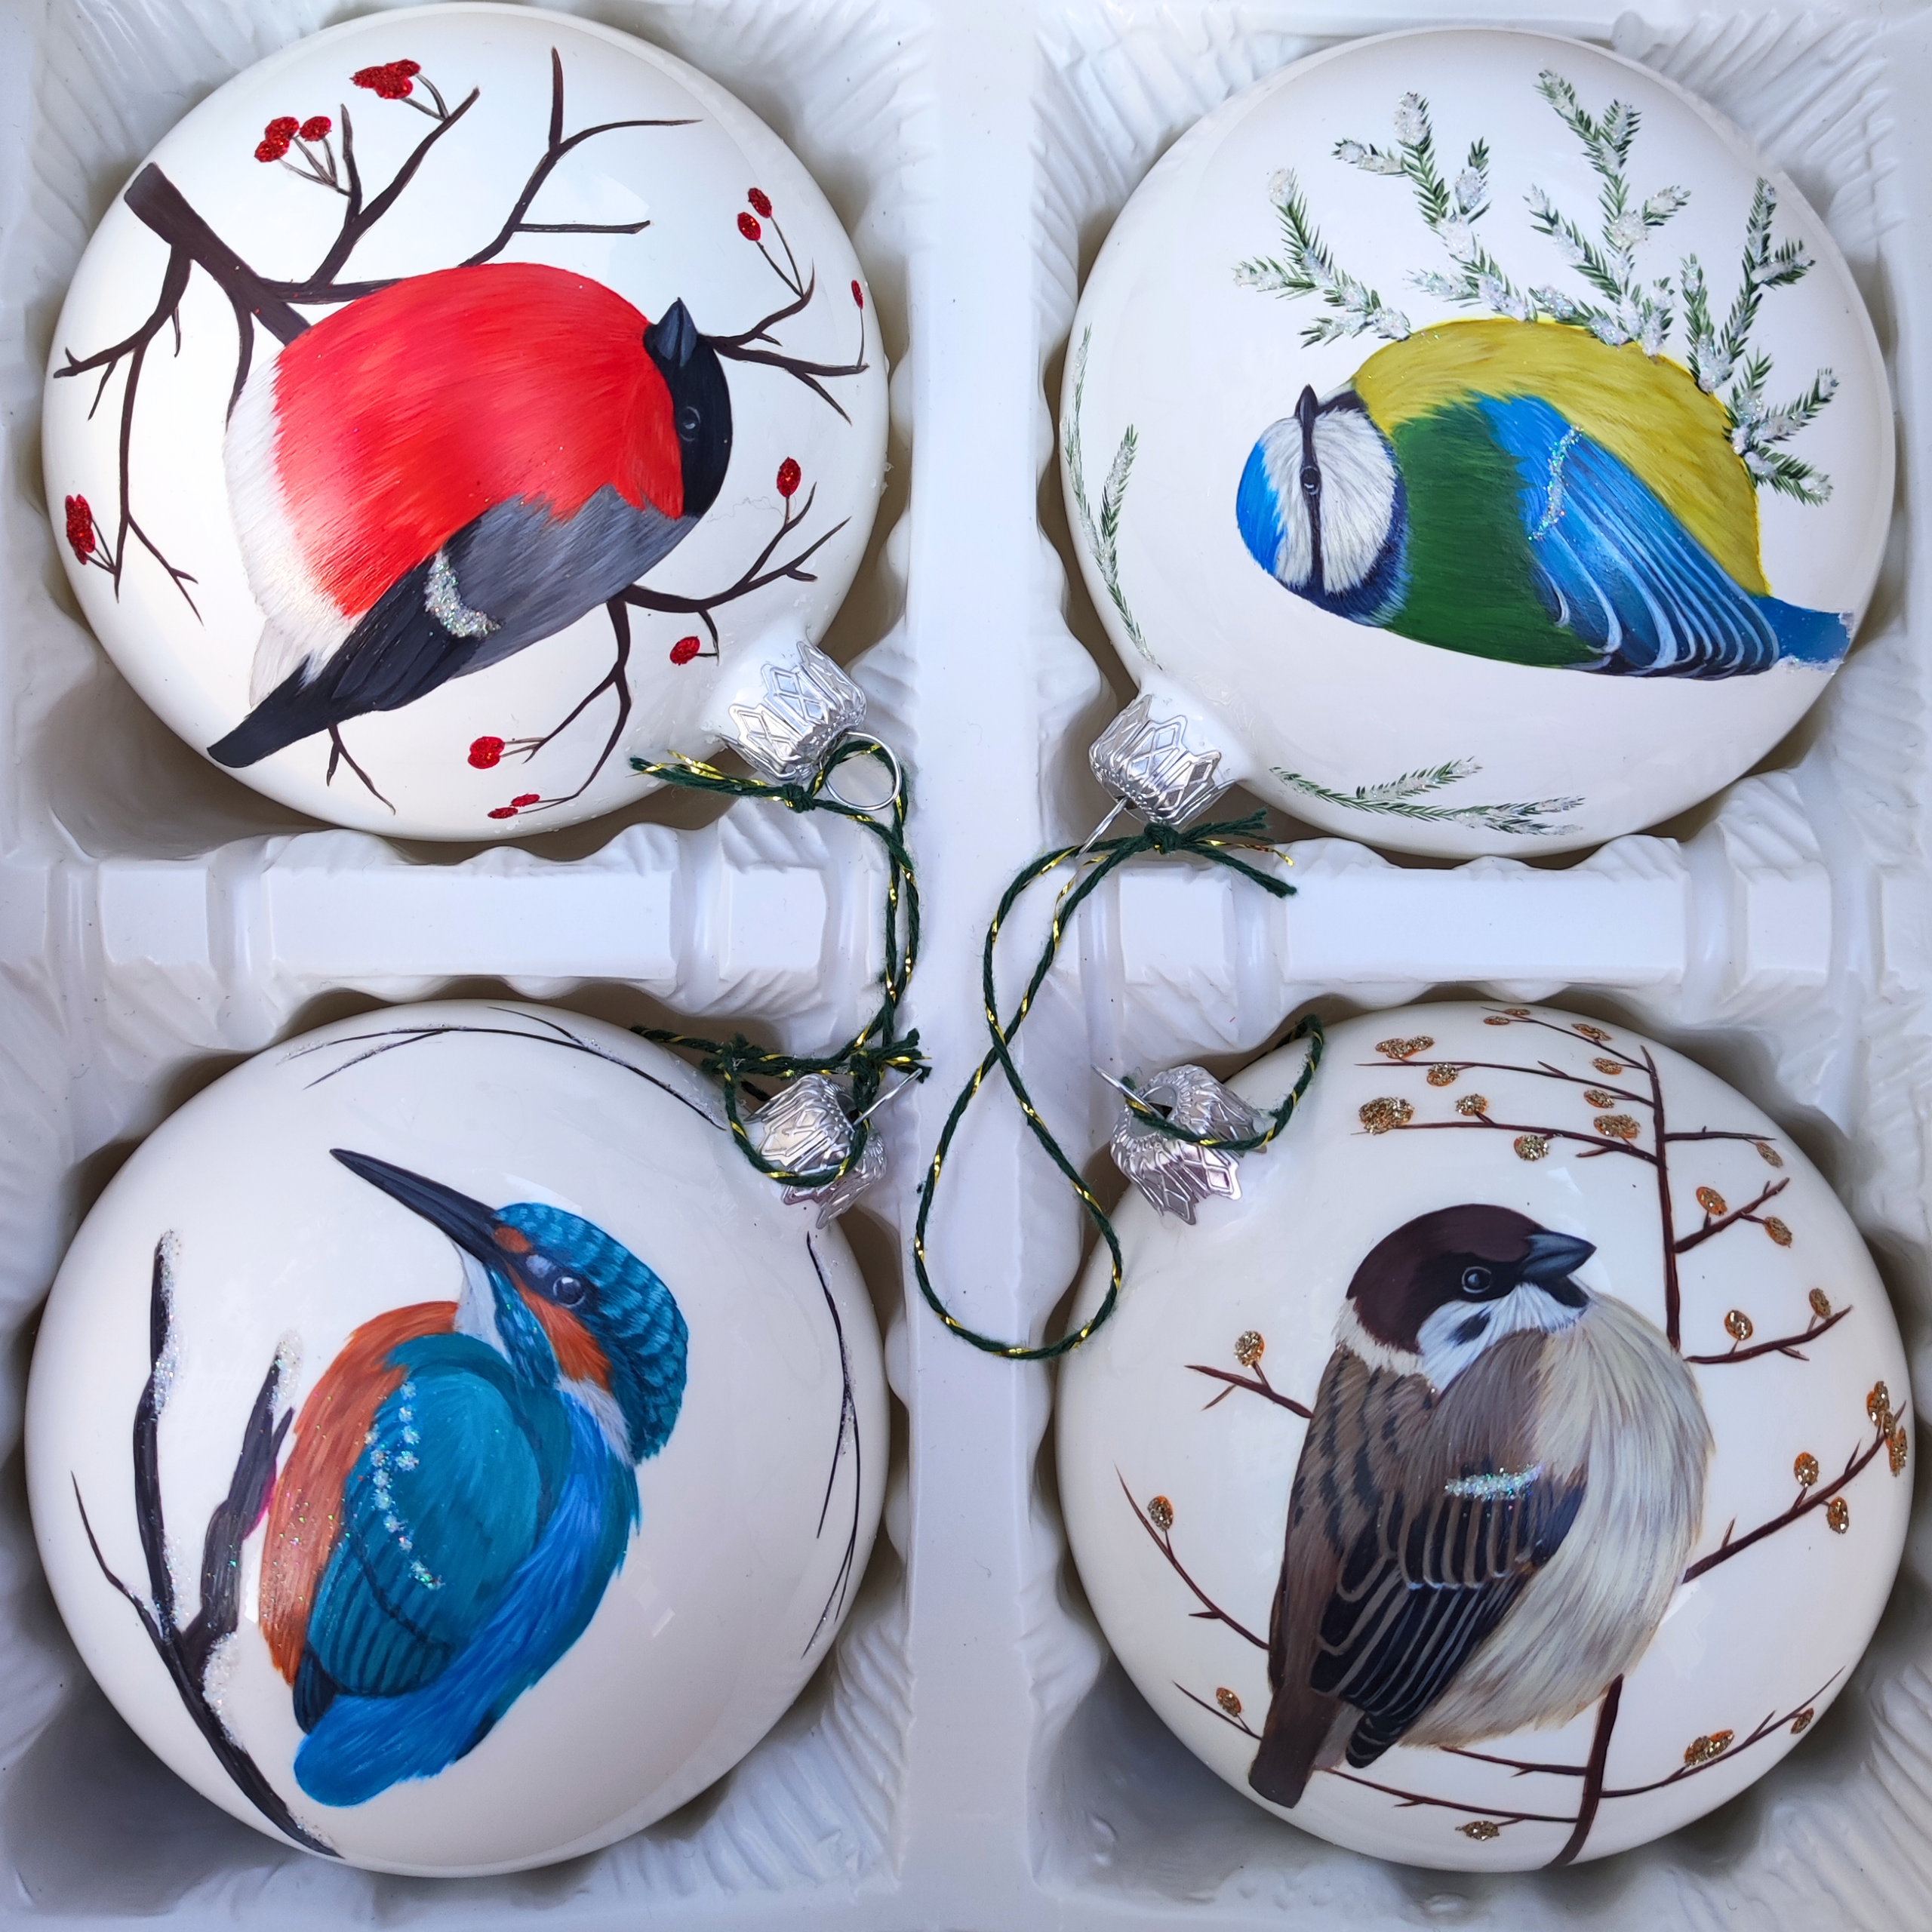 Komplet czterech białych bombek z ręcznie malowanymi ptakami: gilem, modraszką, zimorodkiem i mazurkiem.